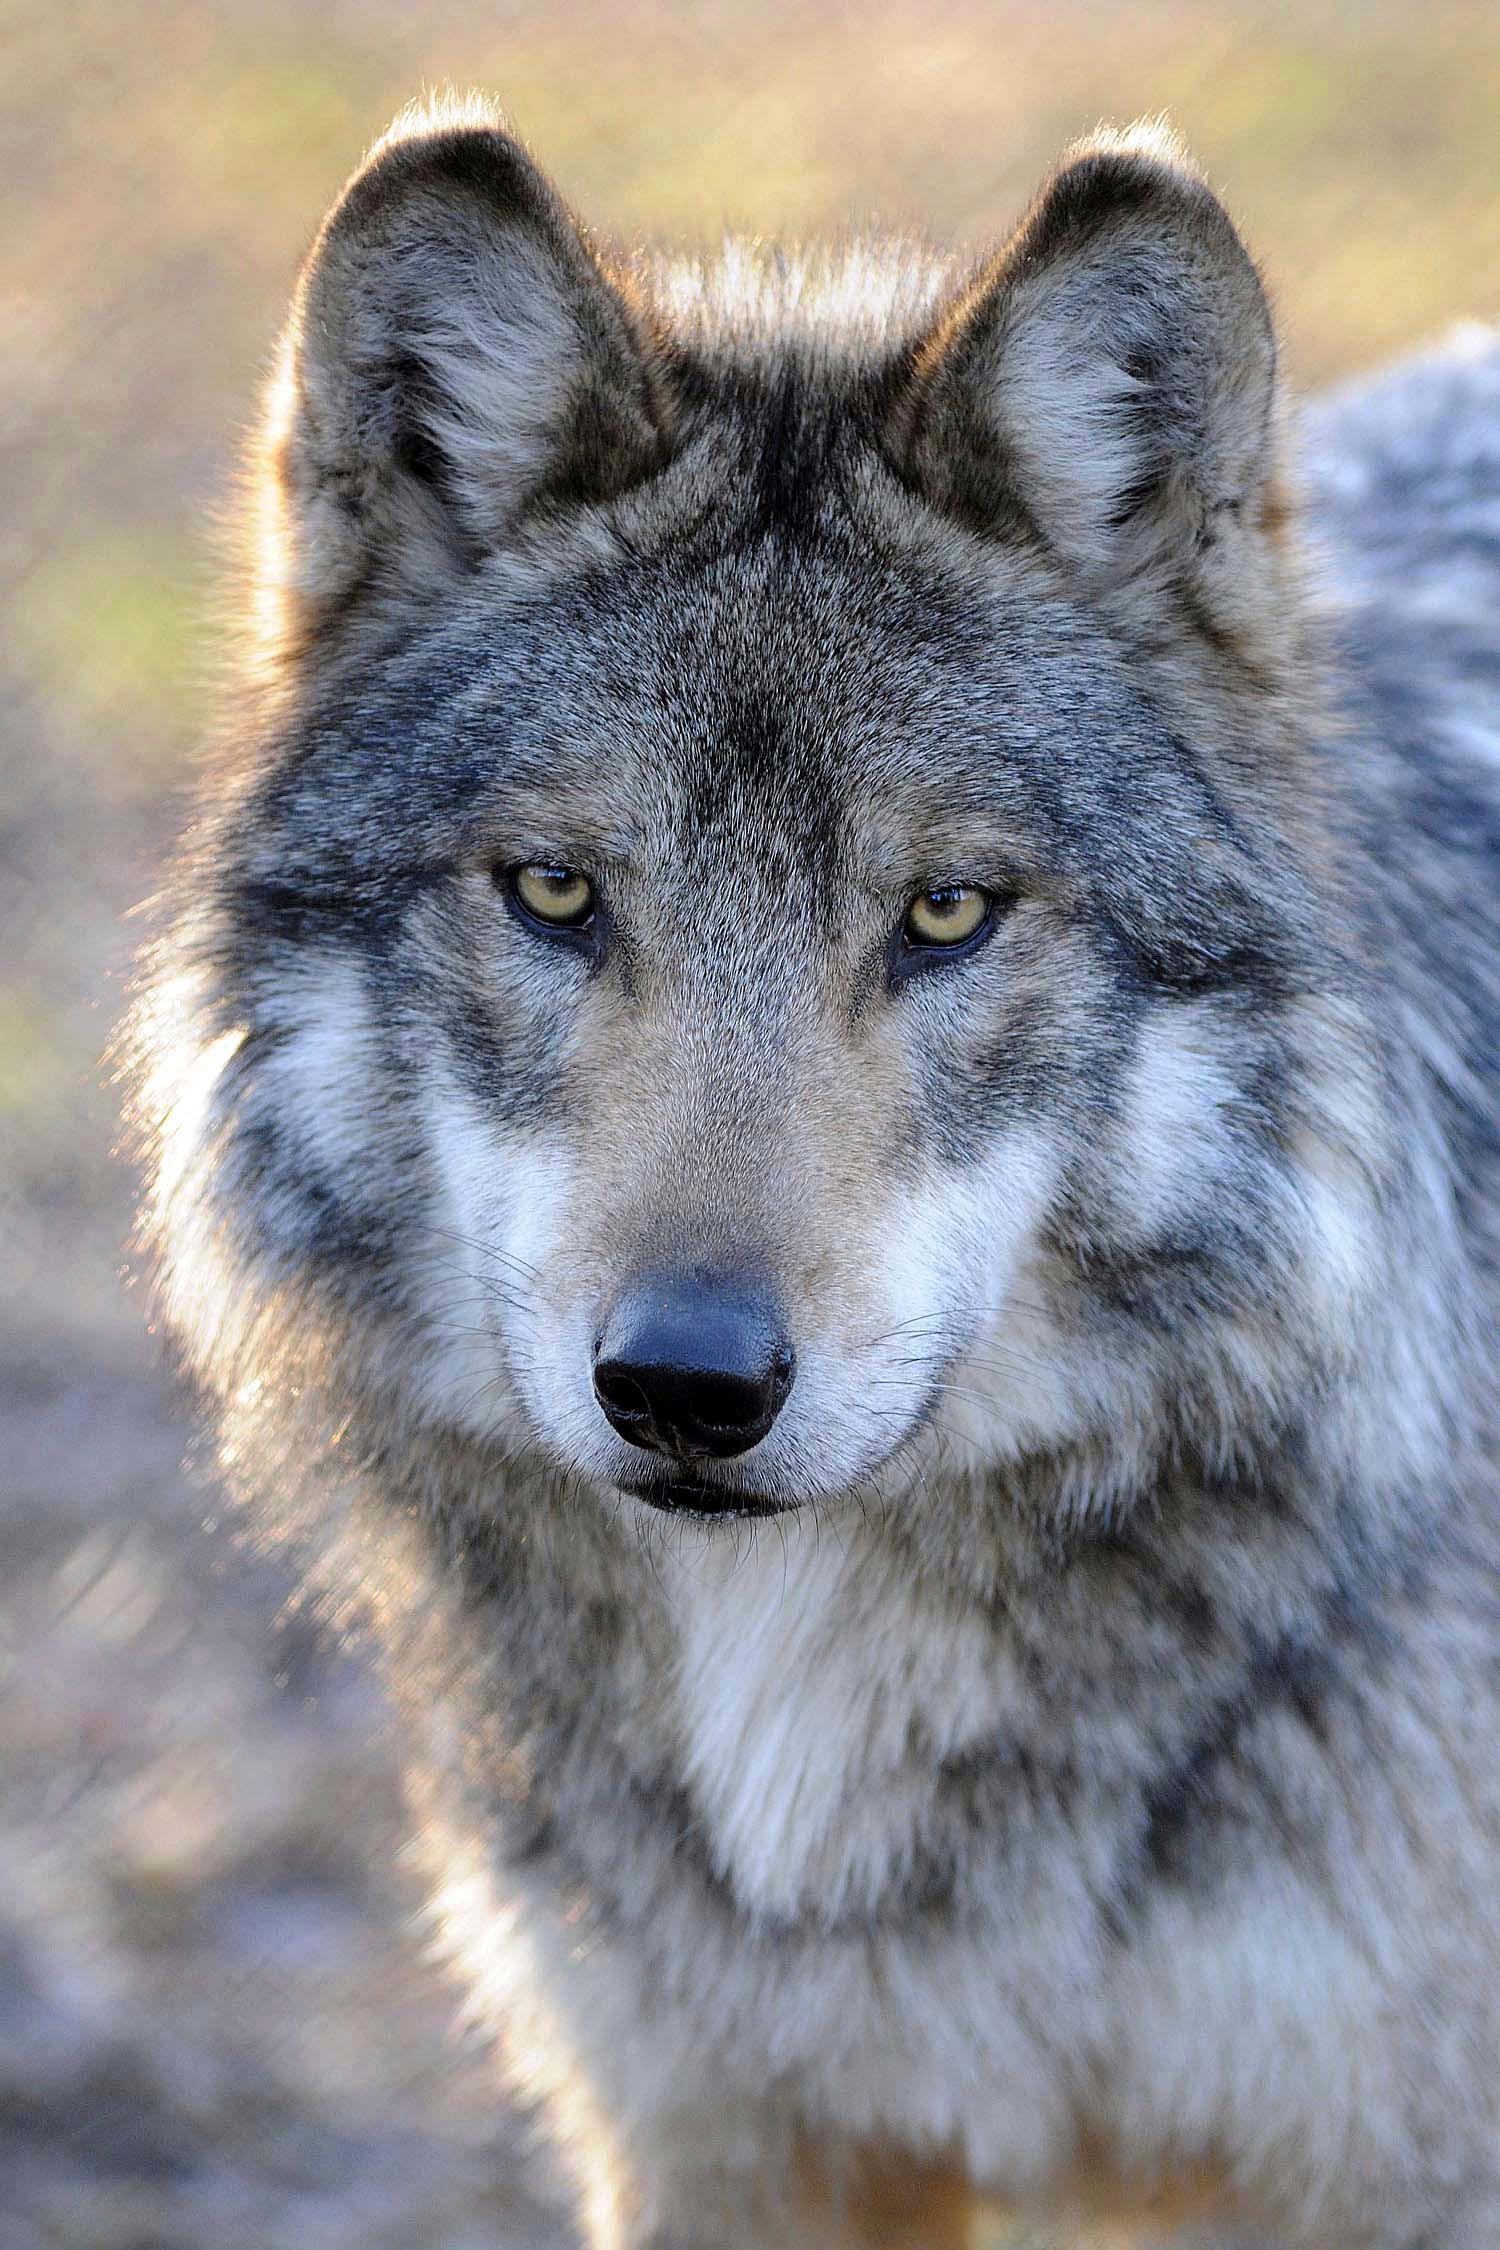 Ulven er genindvandret naturligt i 2012, og selvom der er tvivl om, hvor mange ulve der egentlig er i Danmark, er der ingen tvivl om, at der i dag er flere eksemplarer.
